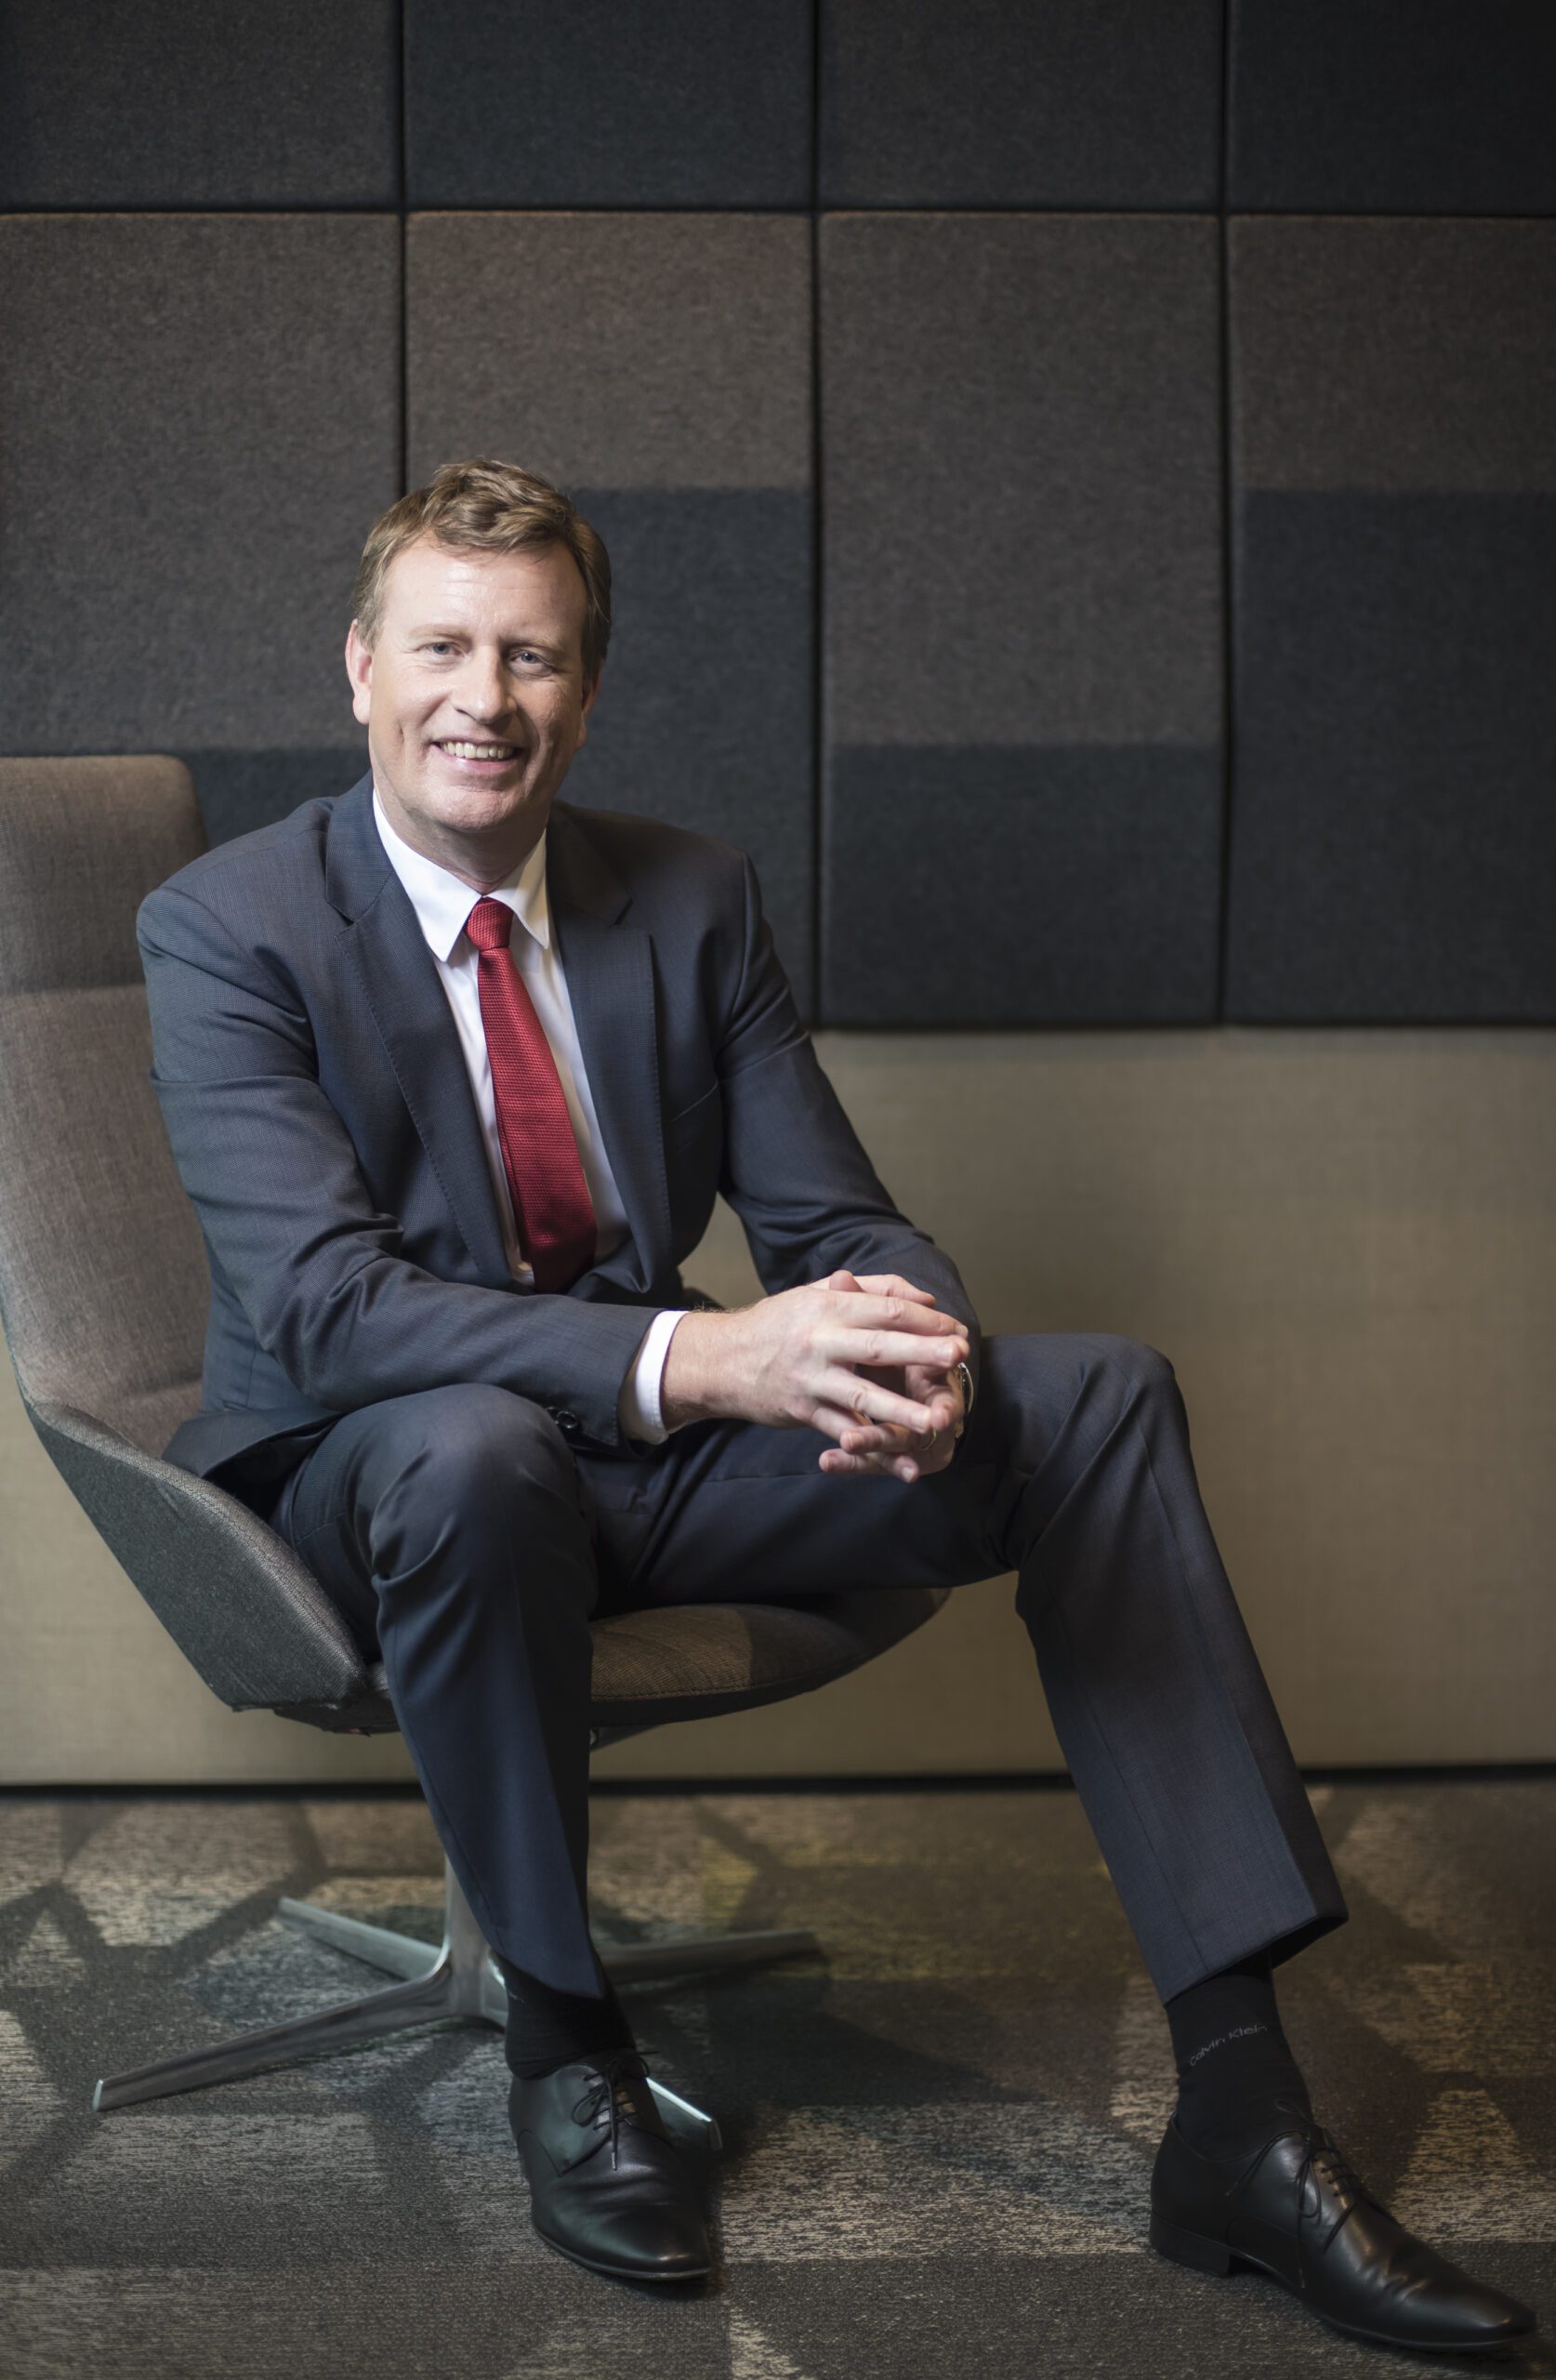 Peter van Deursen ist neues Mitglied des Aufsichtsrats von Vion